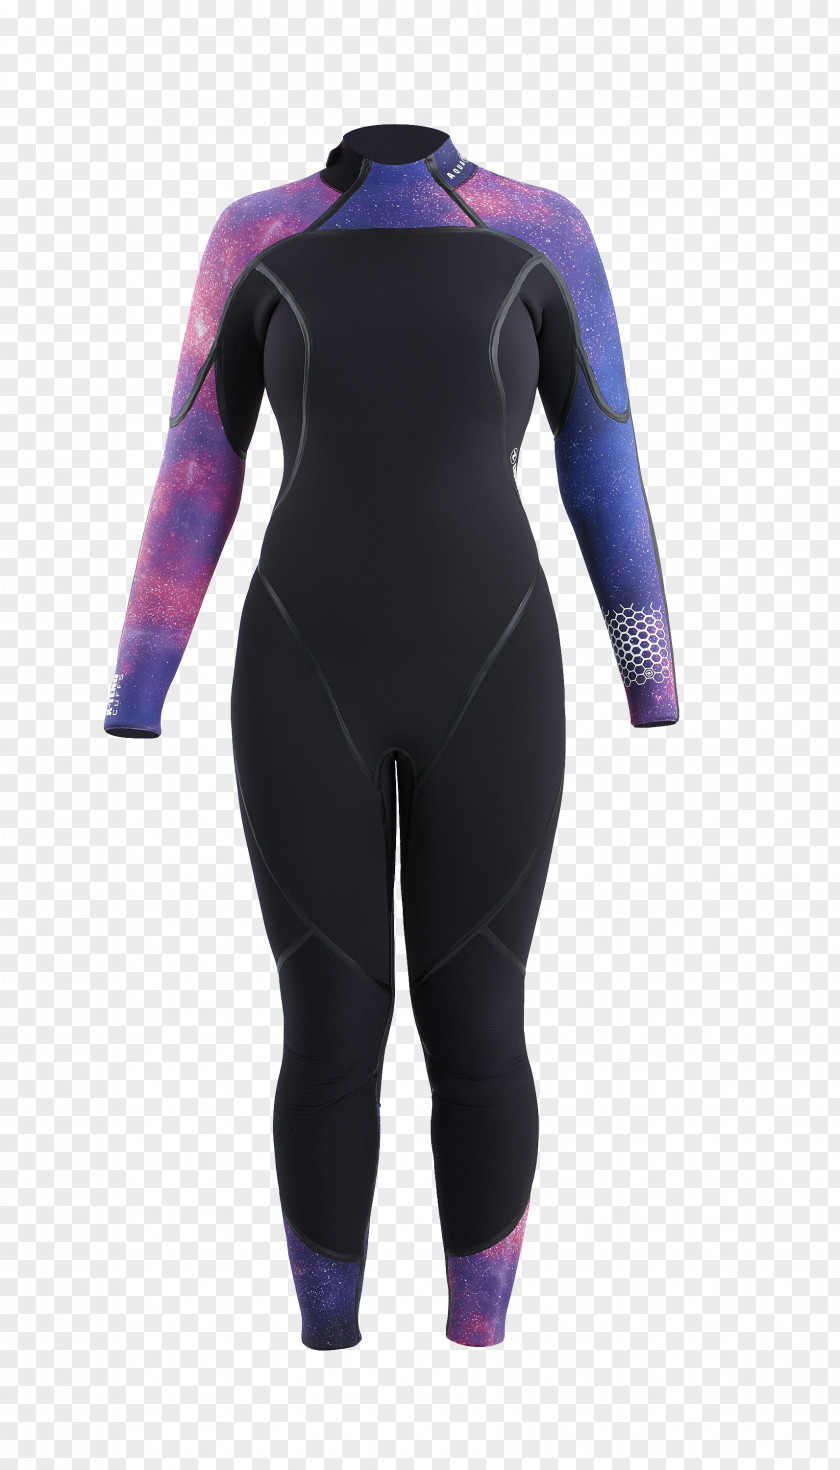 Suit For Women Wetsuit Aqua-Lung Scuba Set Diving Dry PNG